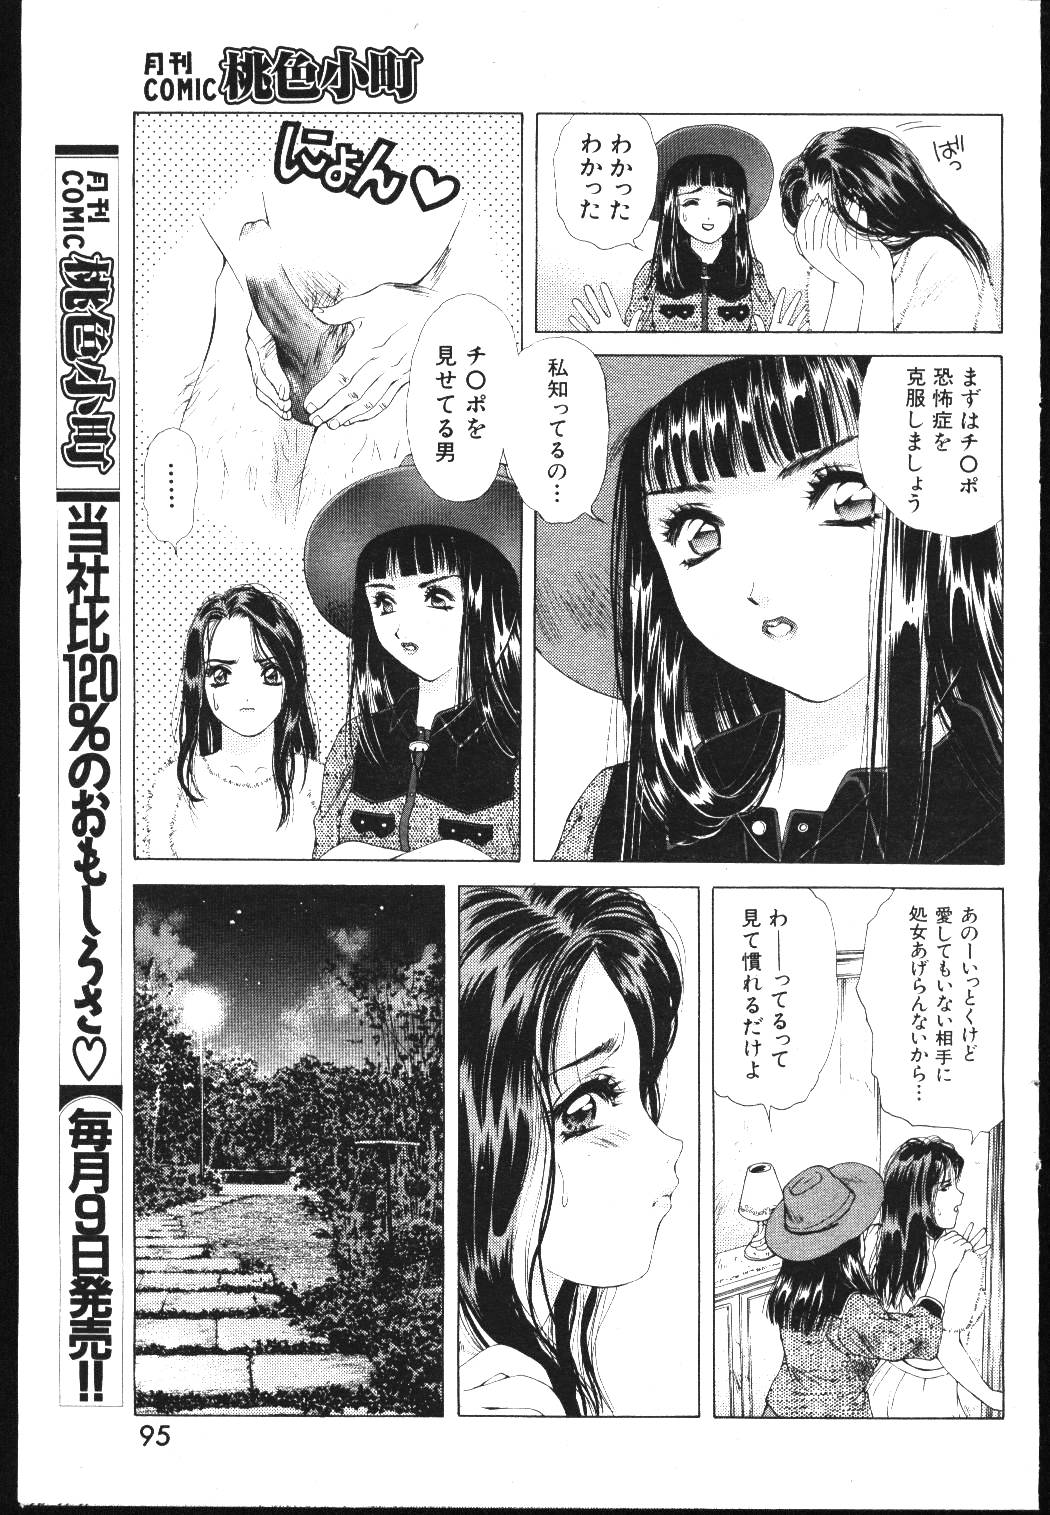 (成年コミック) [雑誌] COMIC 桃色小町 1999年05月号